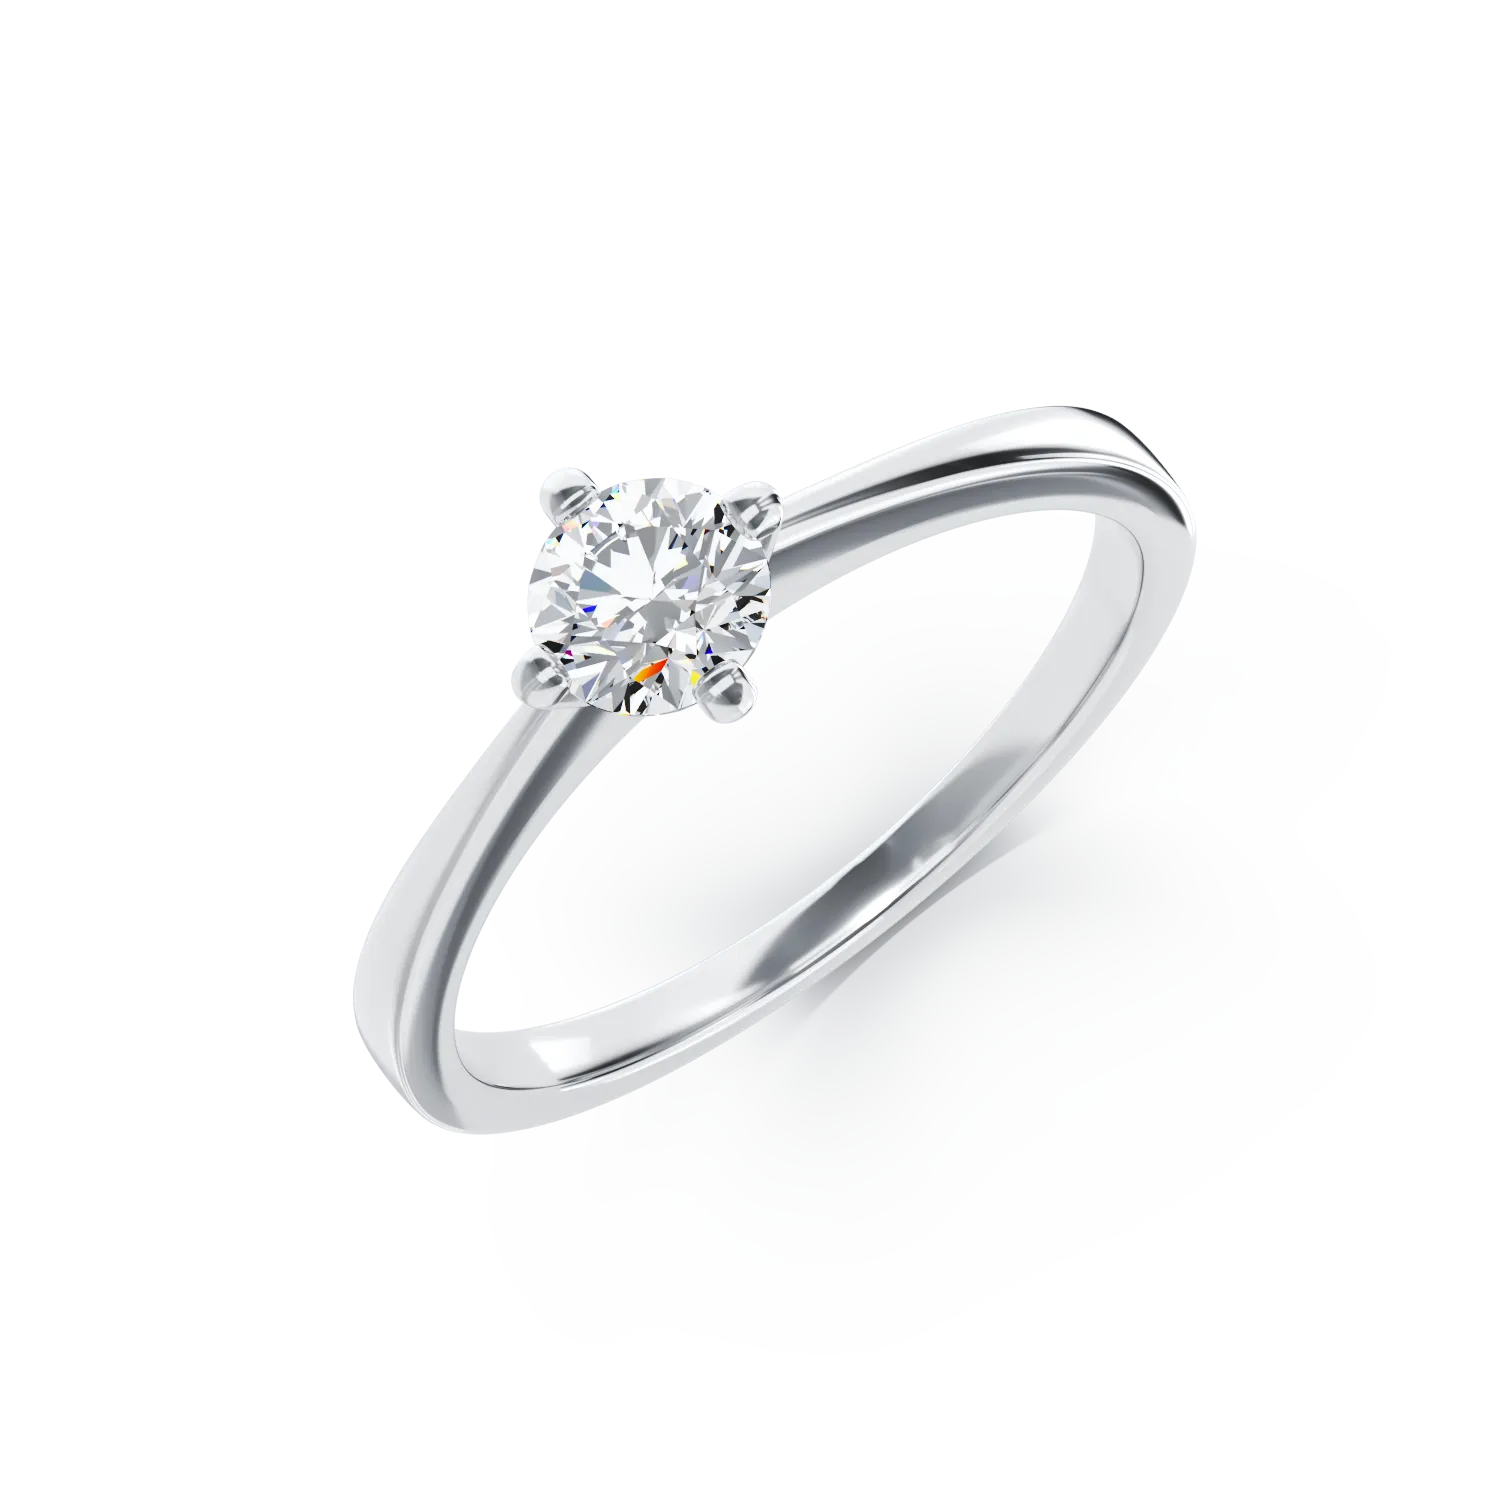 Eljegyzési gyűrű 18K-os fehér aranyból 0,4ct gyémánttal. Gramm: 2,95